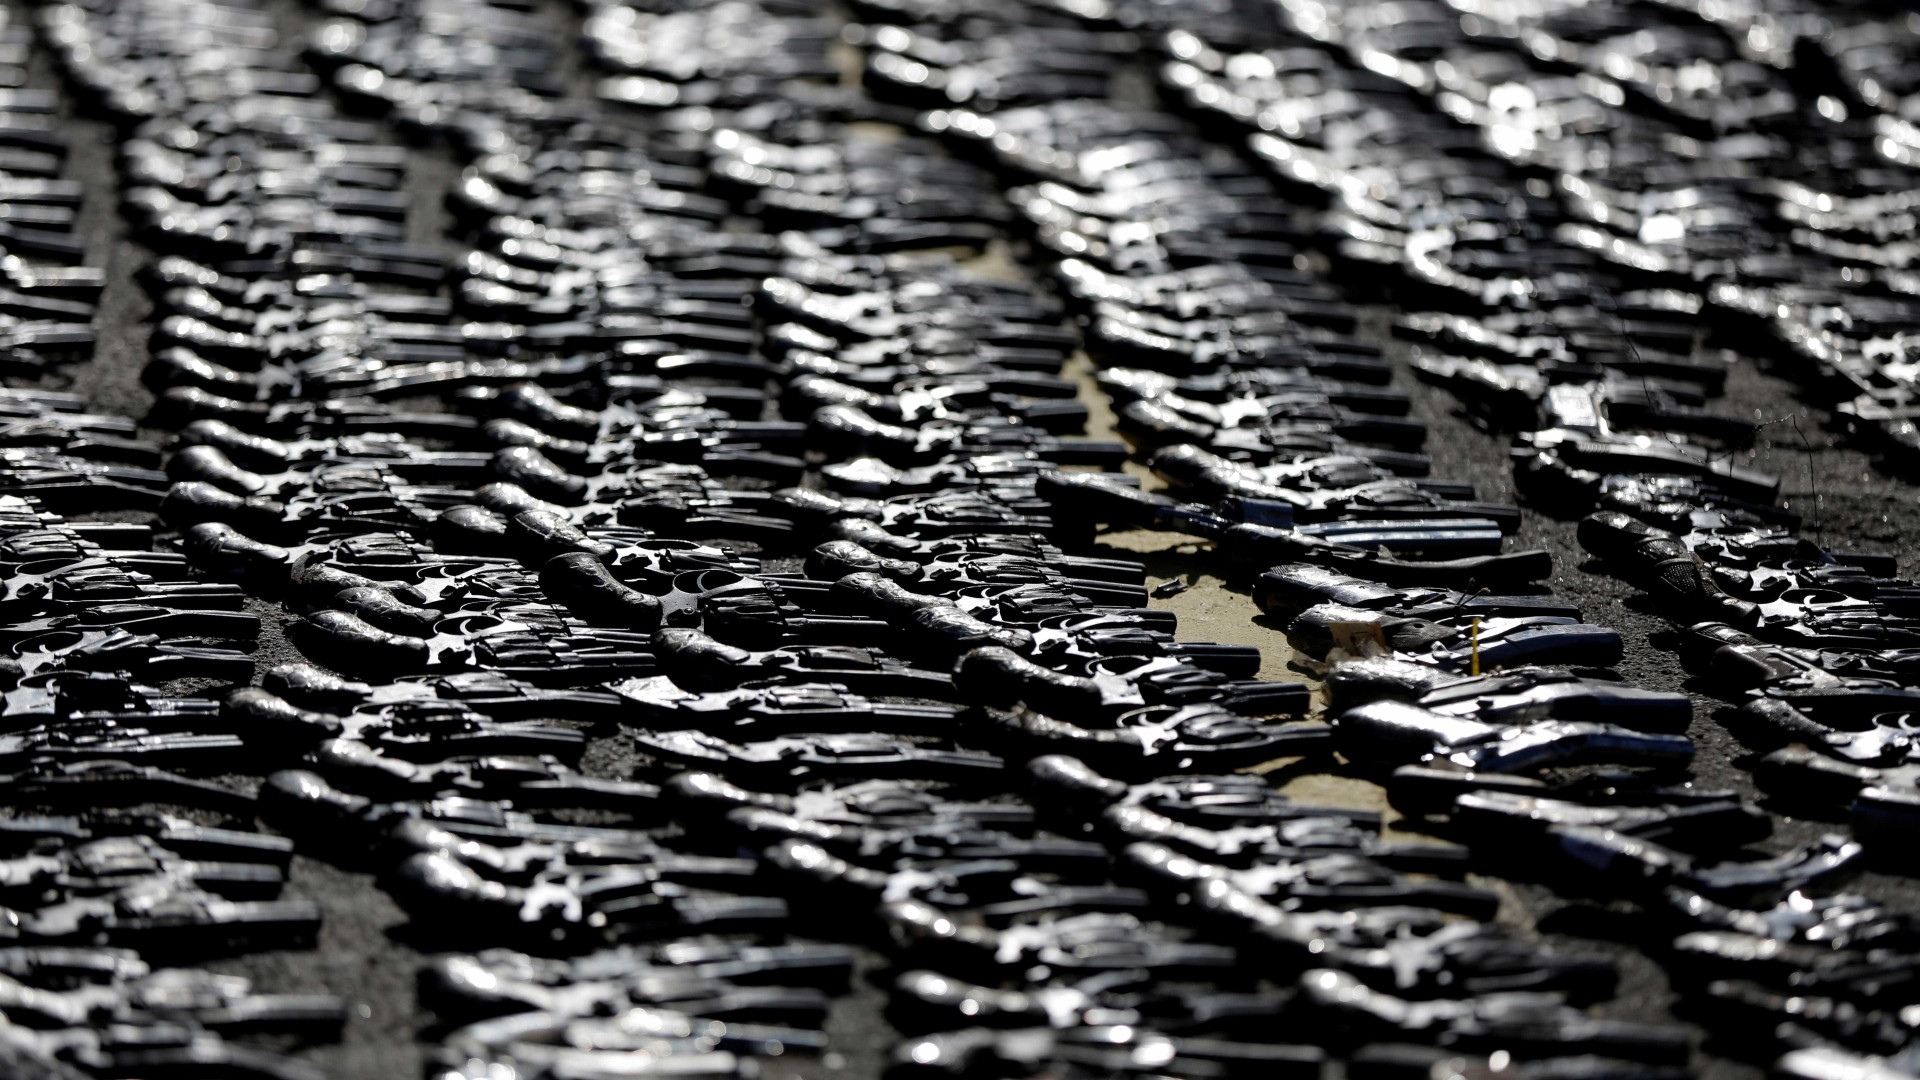 Para 61% dos brasileiros, posse de armas de fogo deve ser proibida